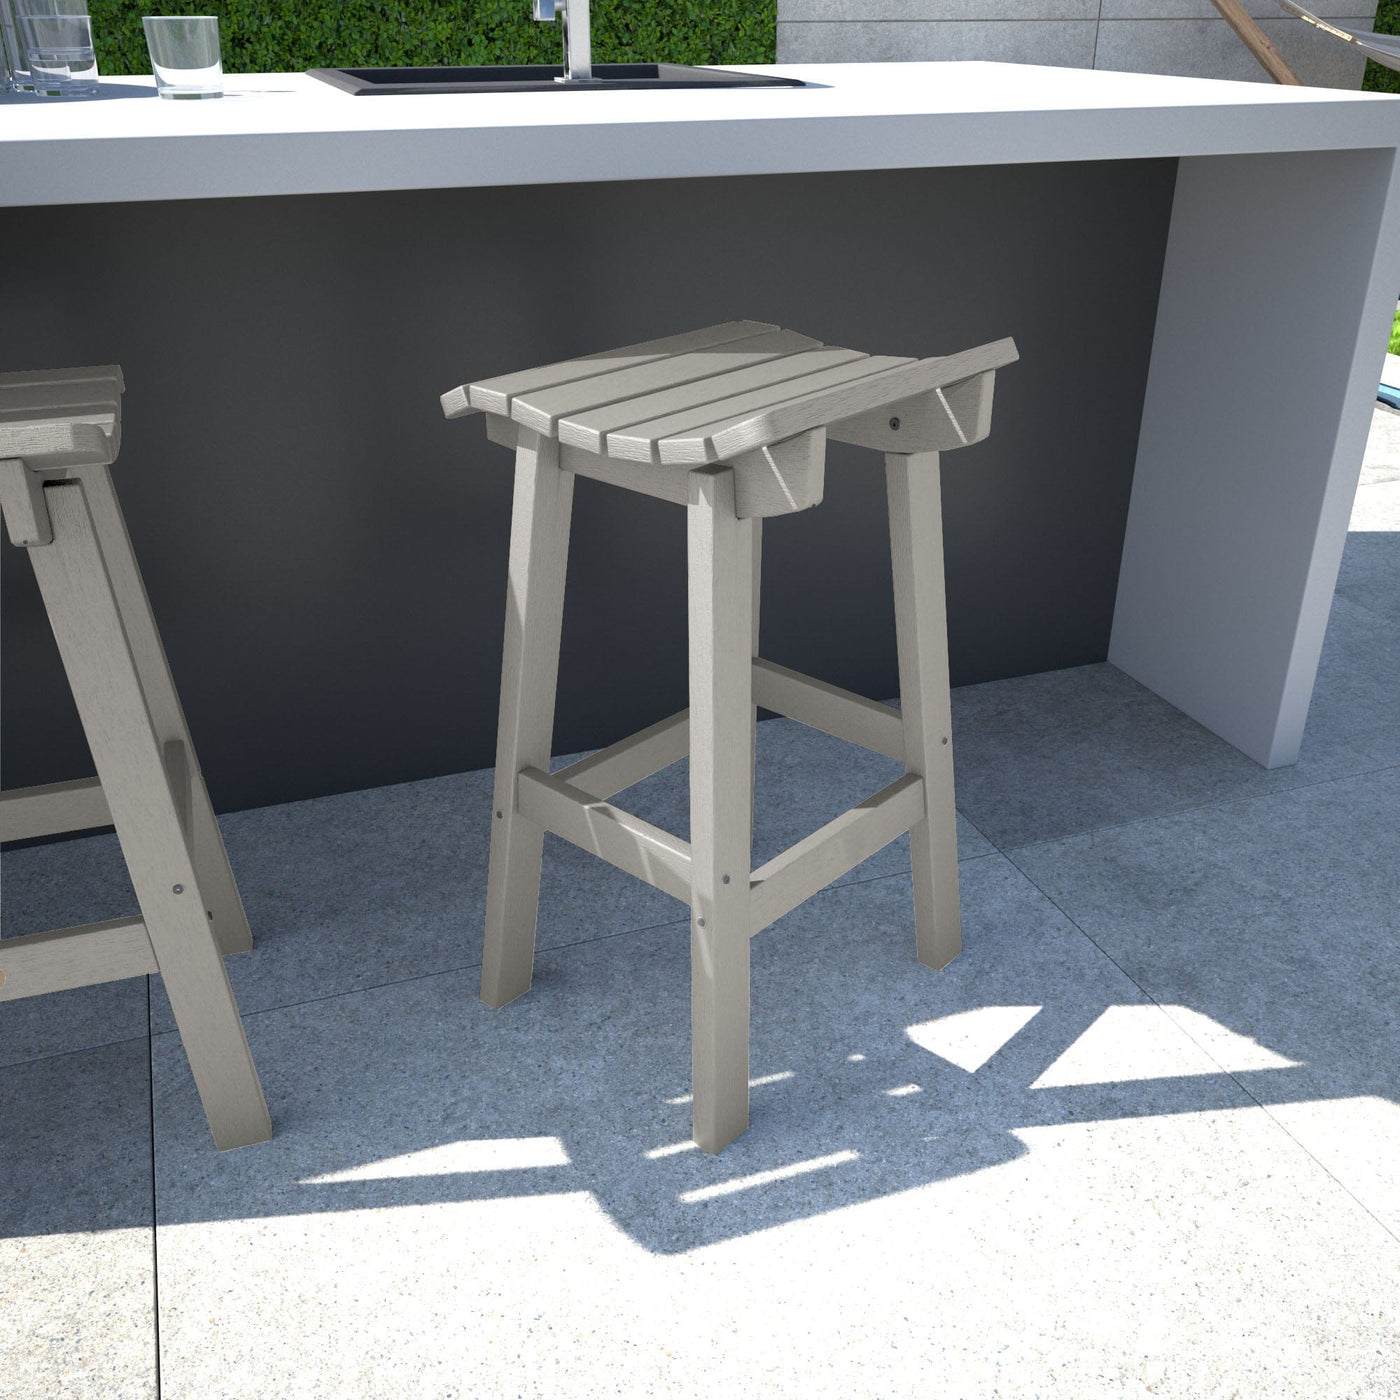 Light gray Summit Bar Stool in outdoor kitchen area